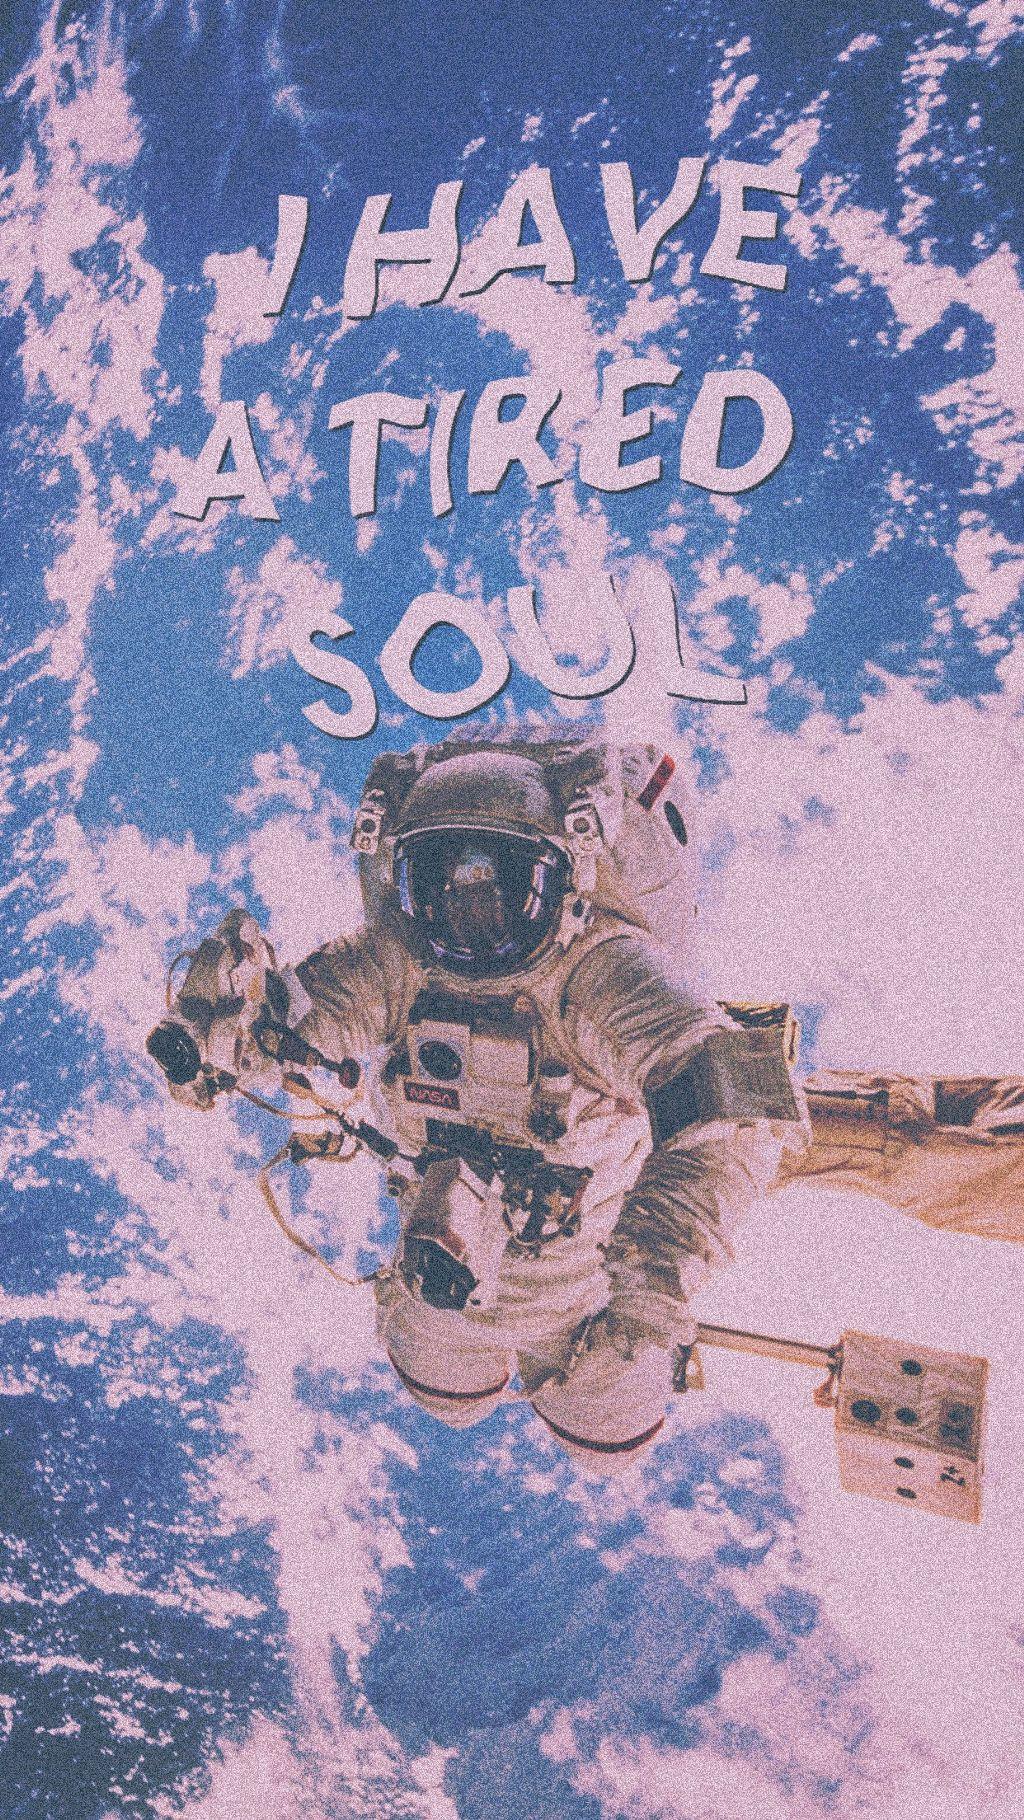 Download Wallpaper Aesthetic Astronaut